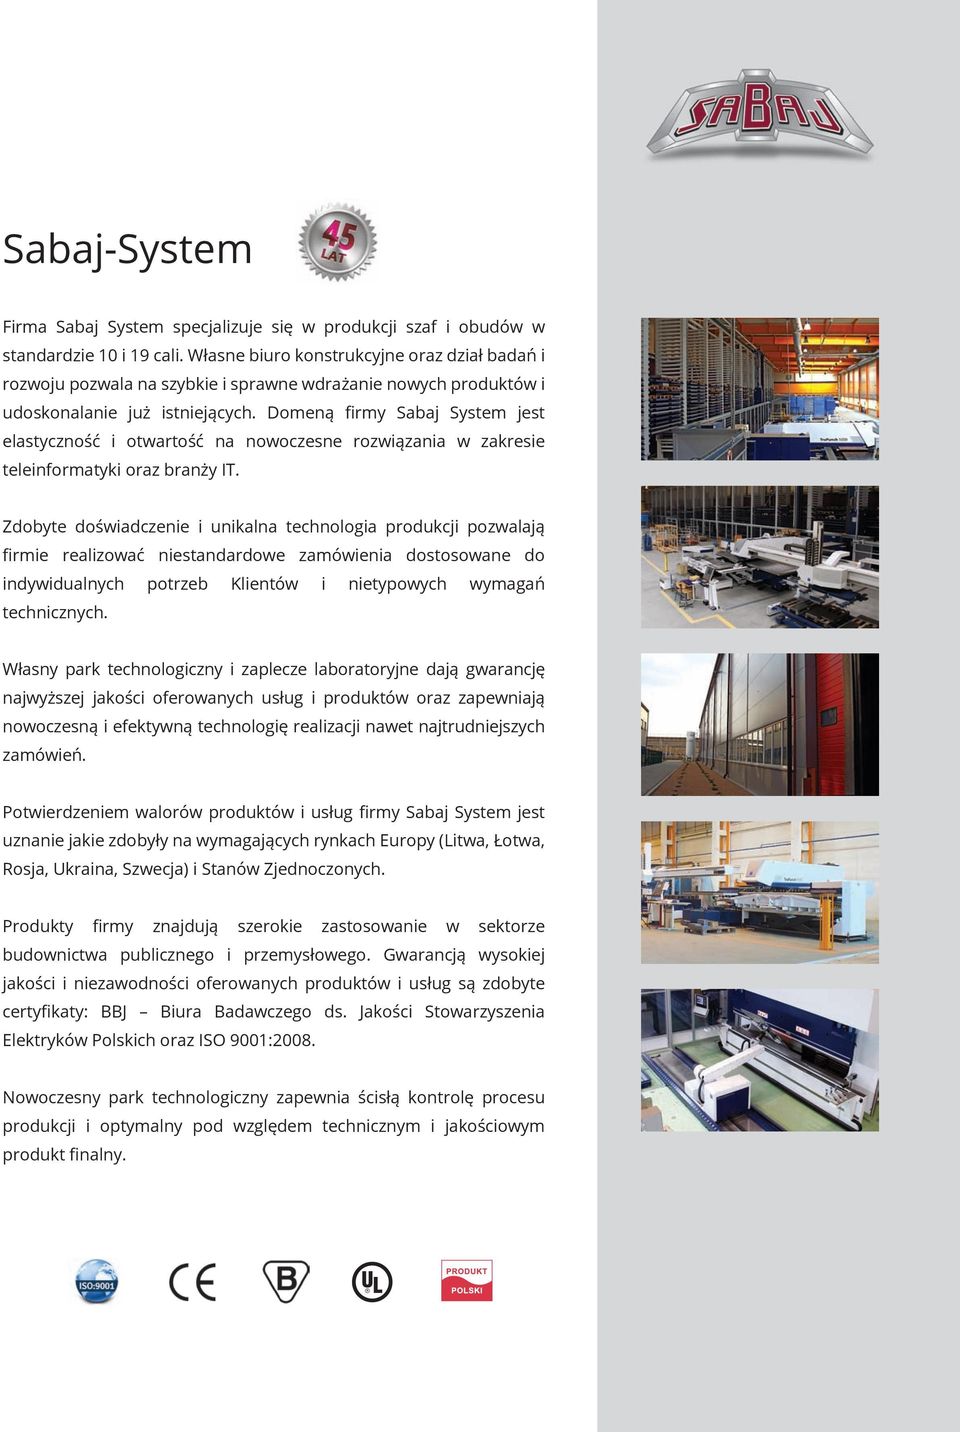 Domeną firmy Sabaj System jest elastyczność i otwartość na nowoczesne rozwiązania w zakresie teleinformatyki oraz branży IT.